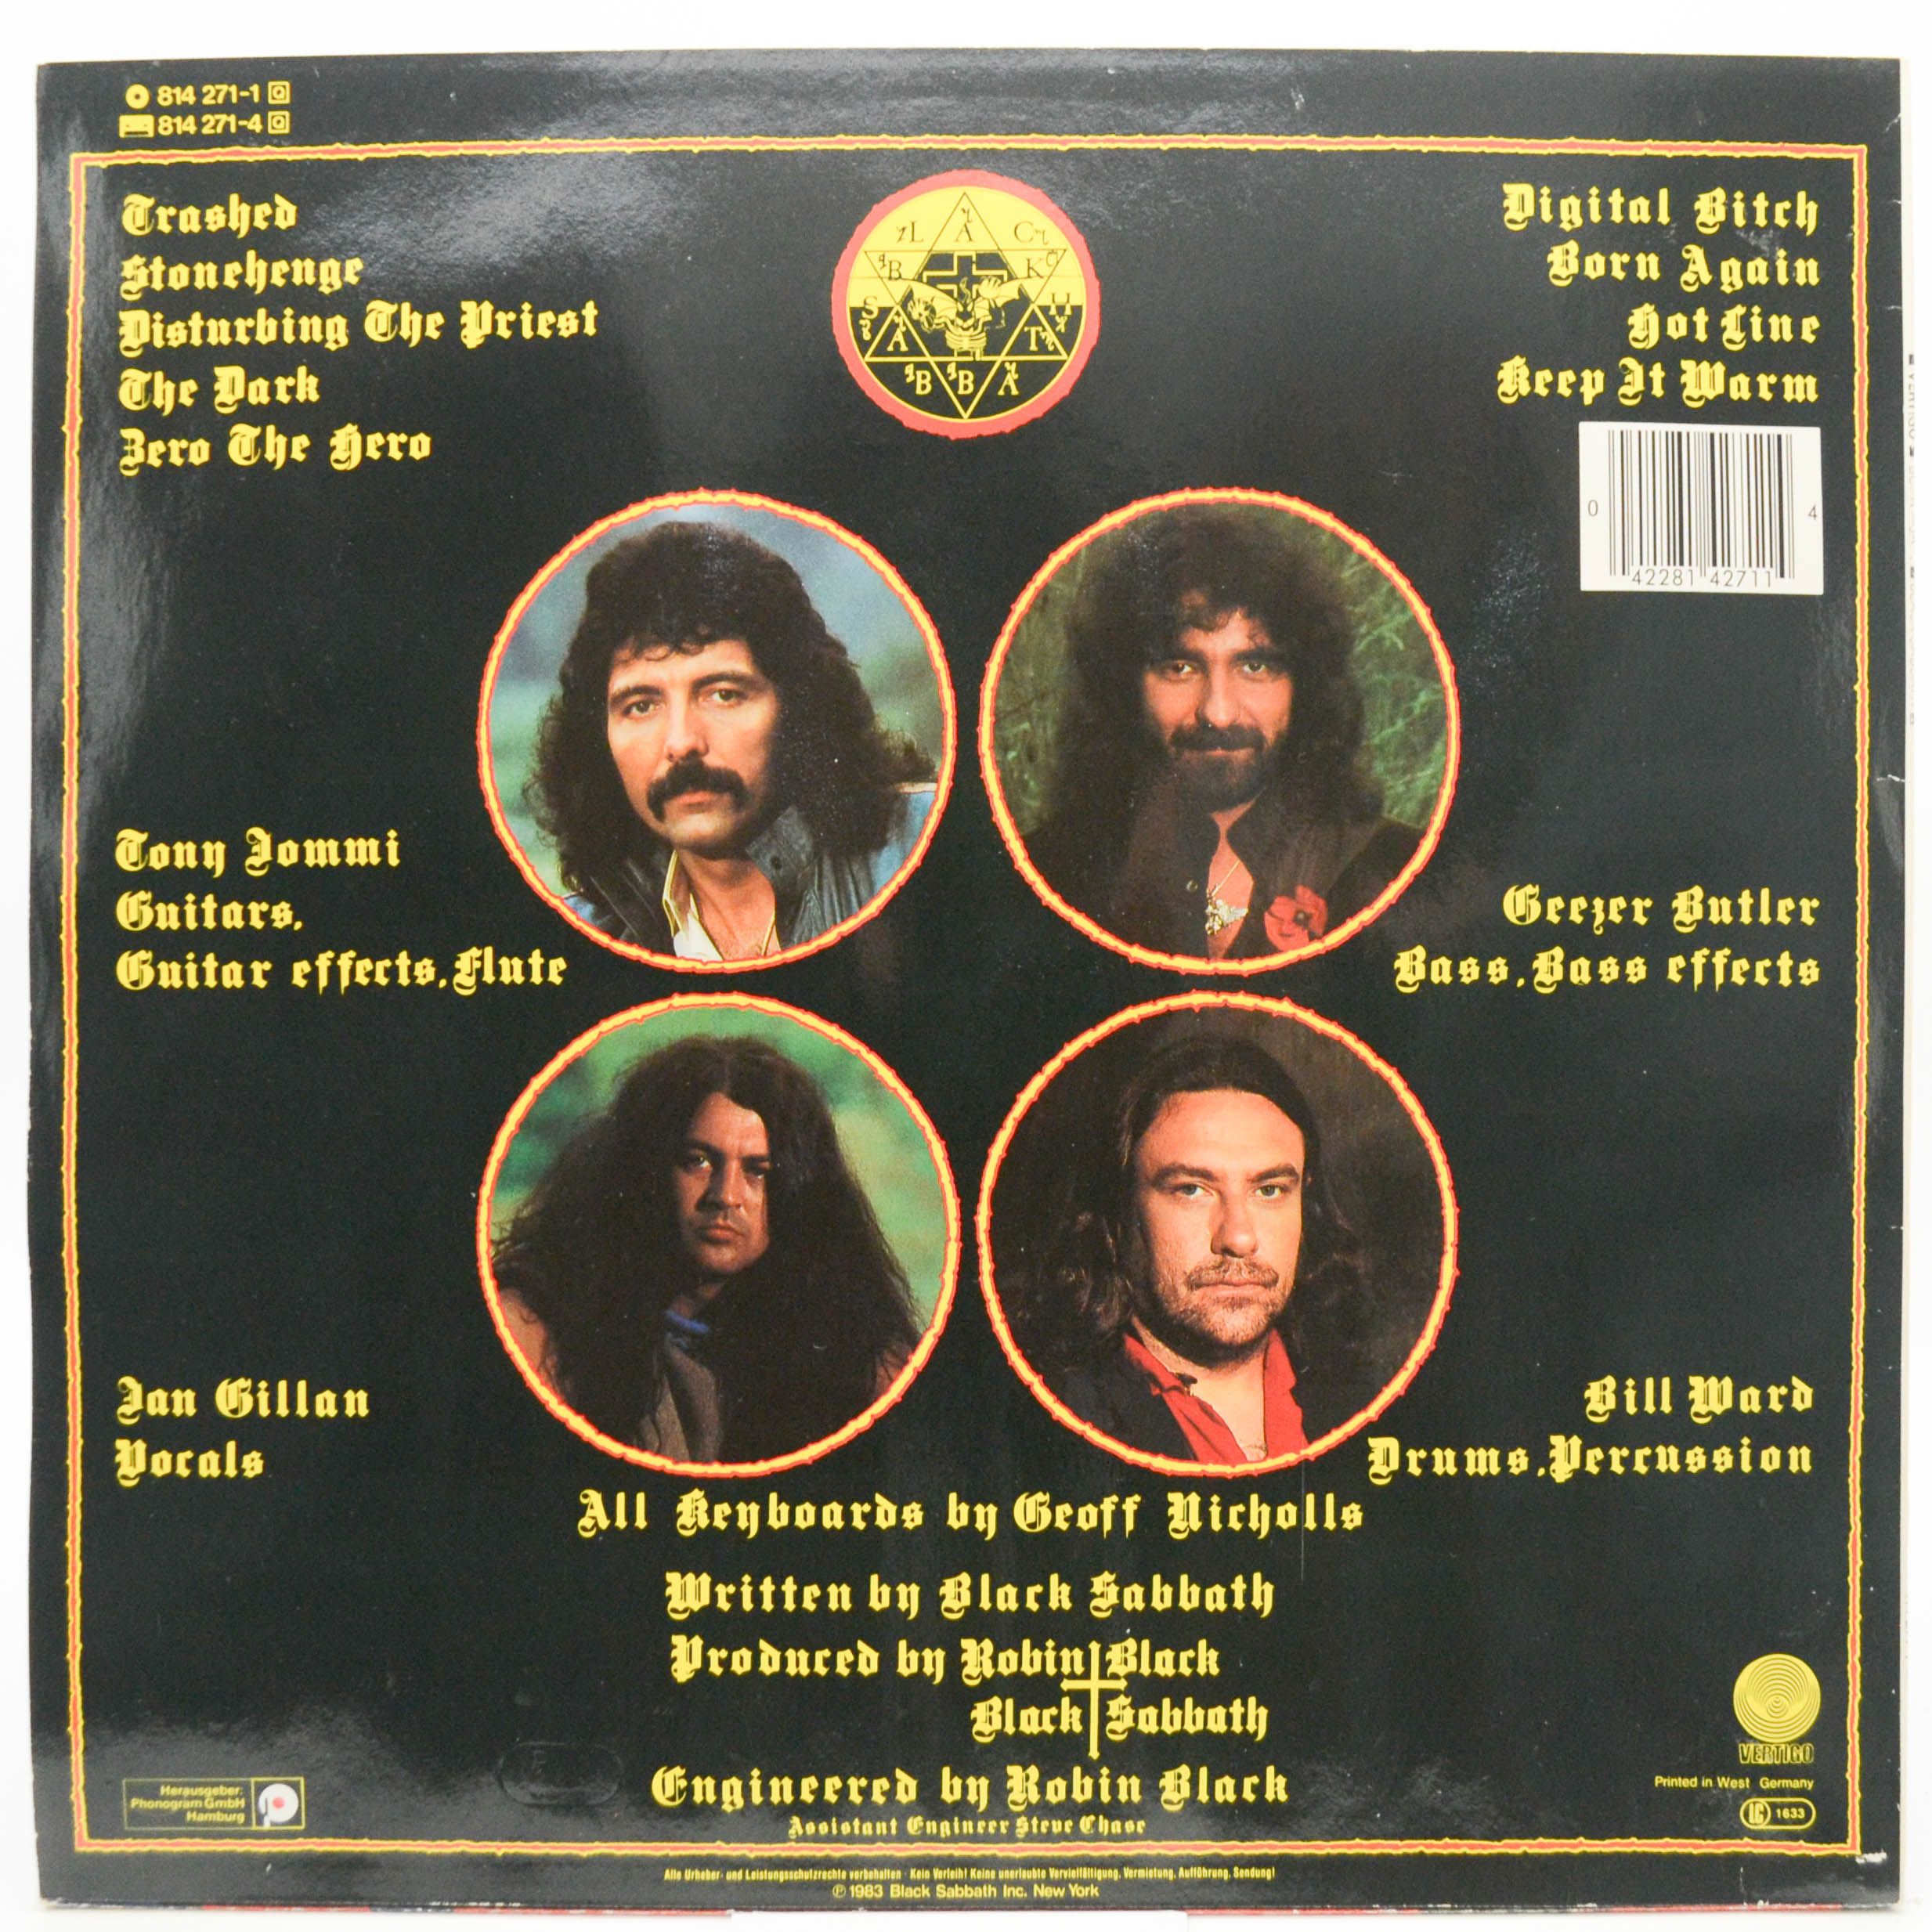 Black Sabbath — Born Again, 1983